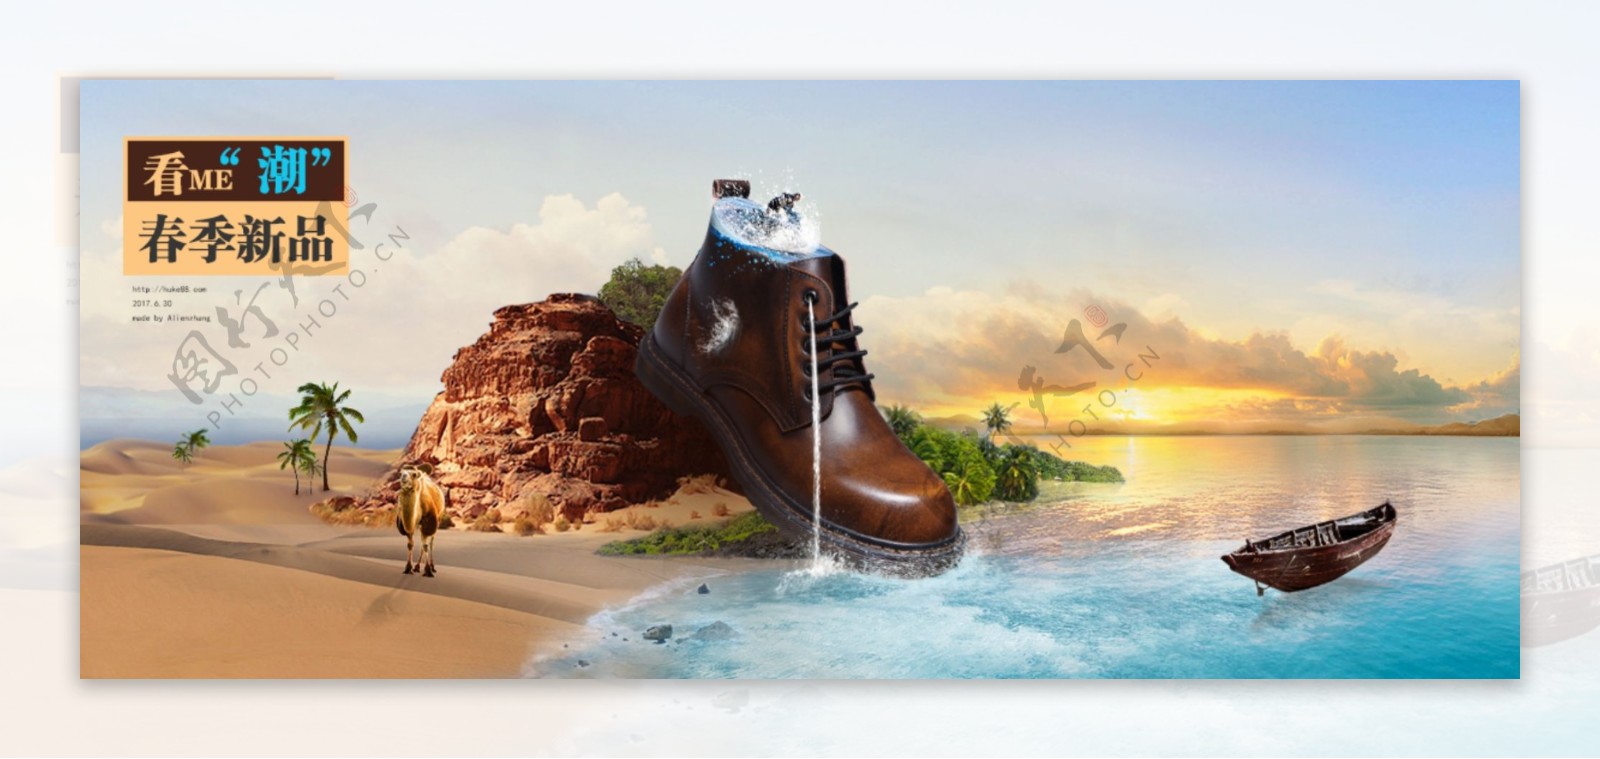 鞋子合成效果图片广告